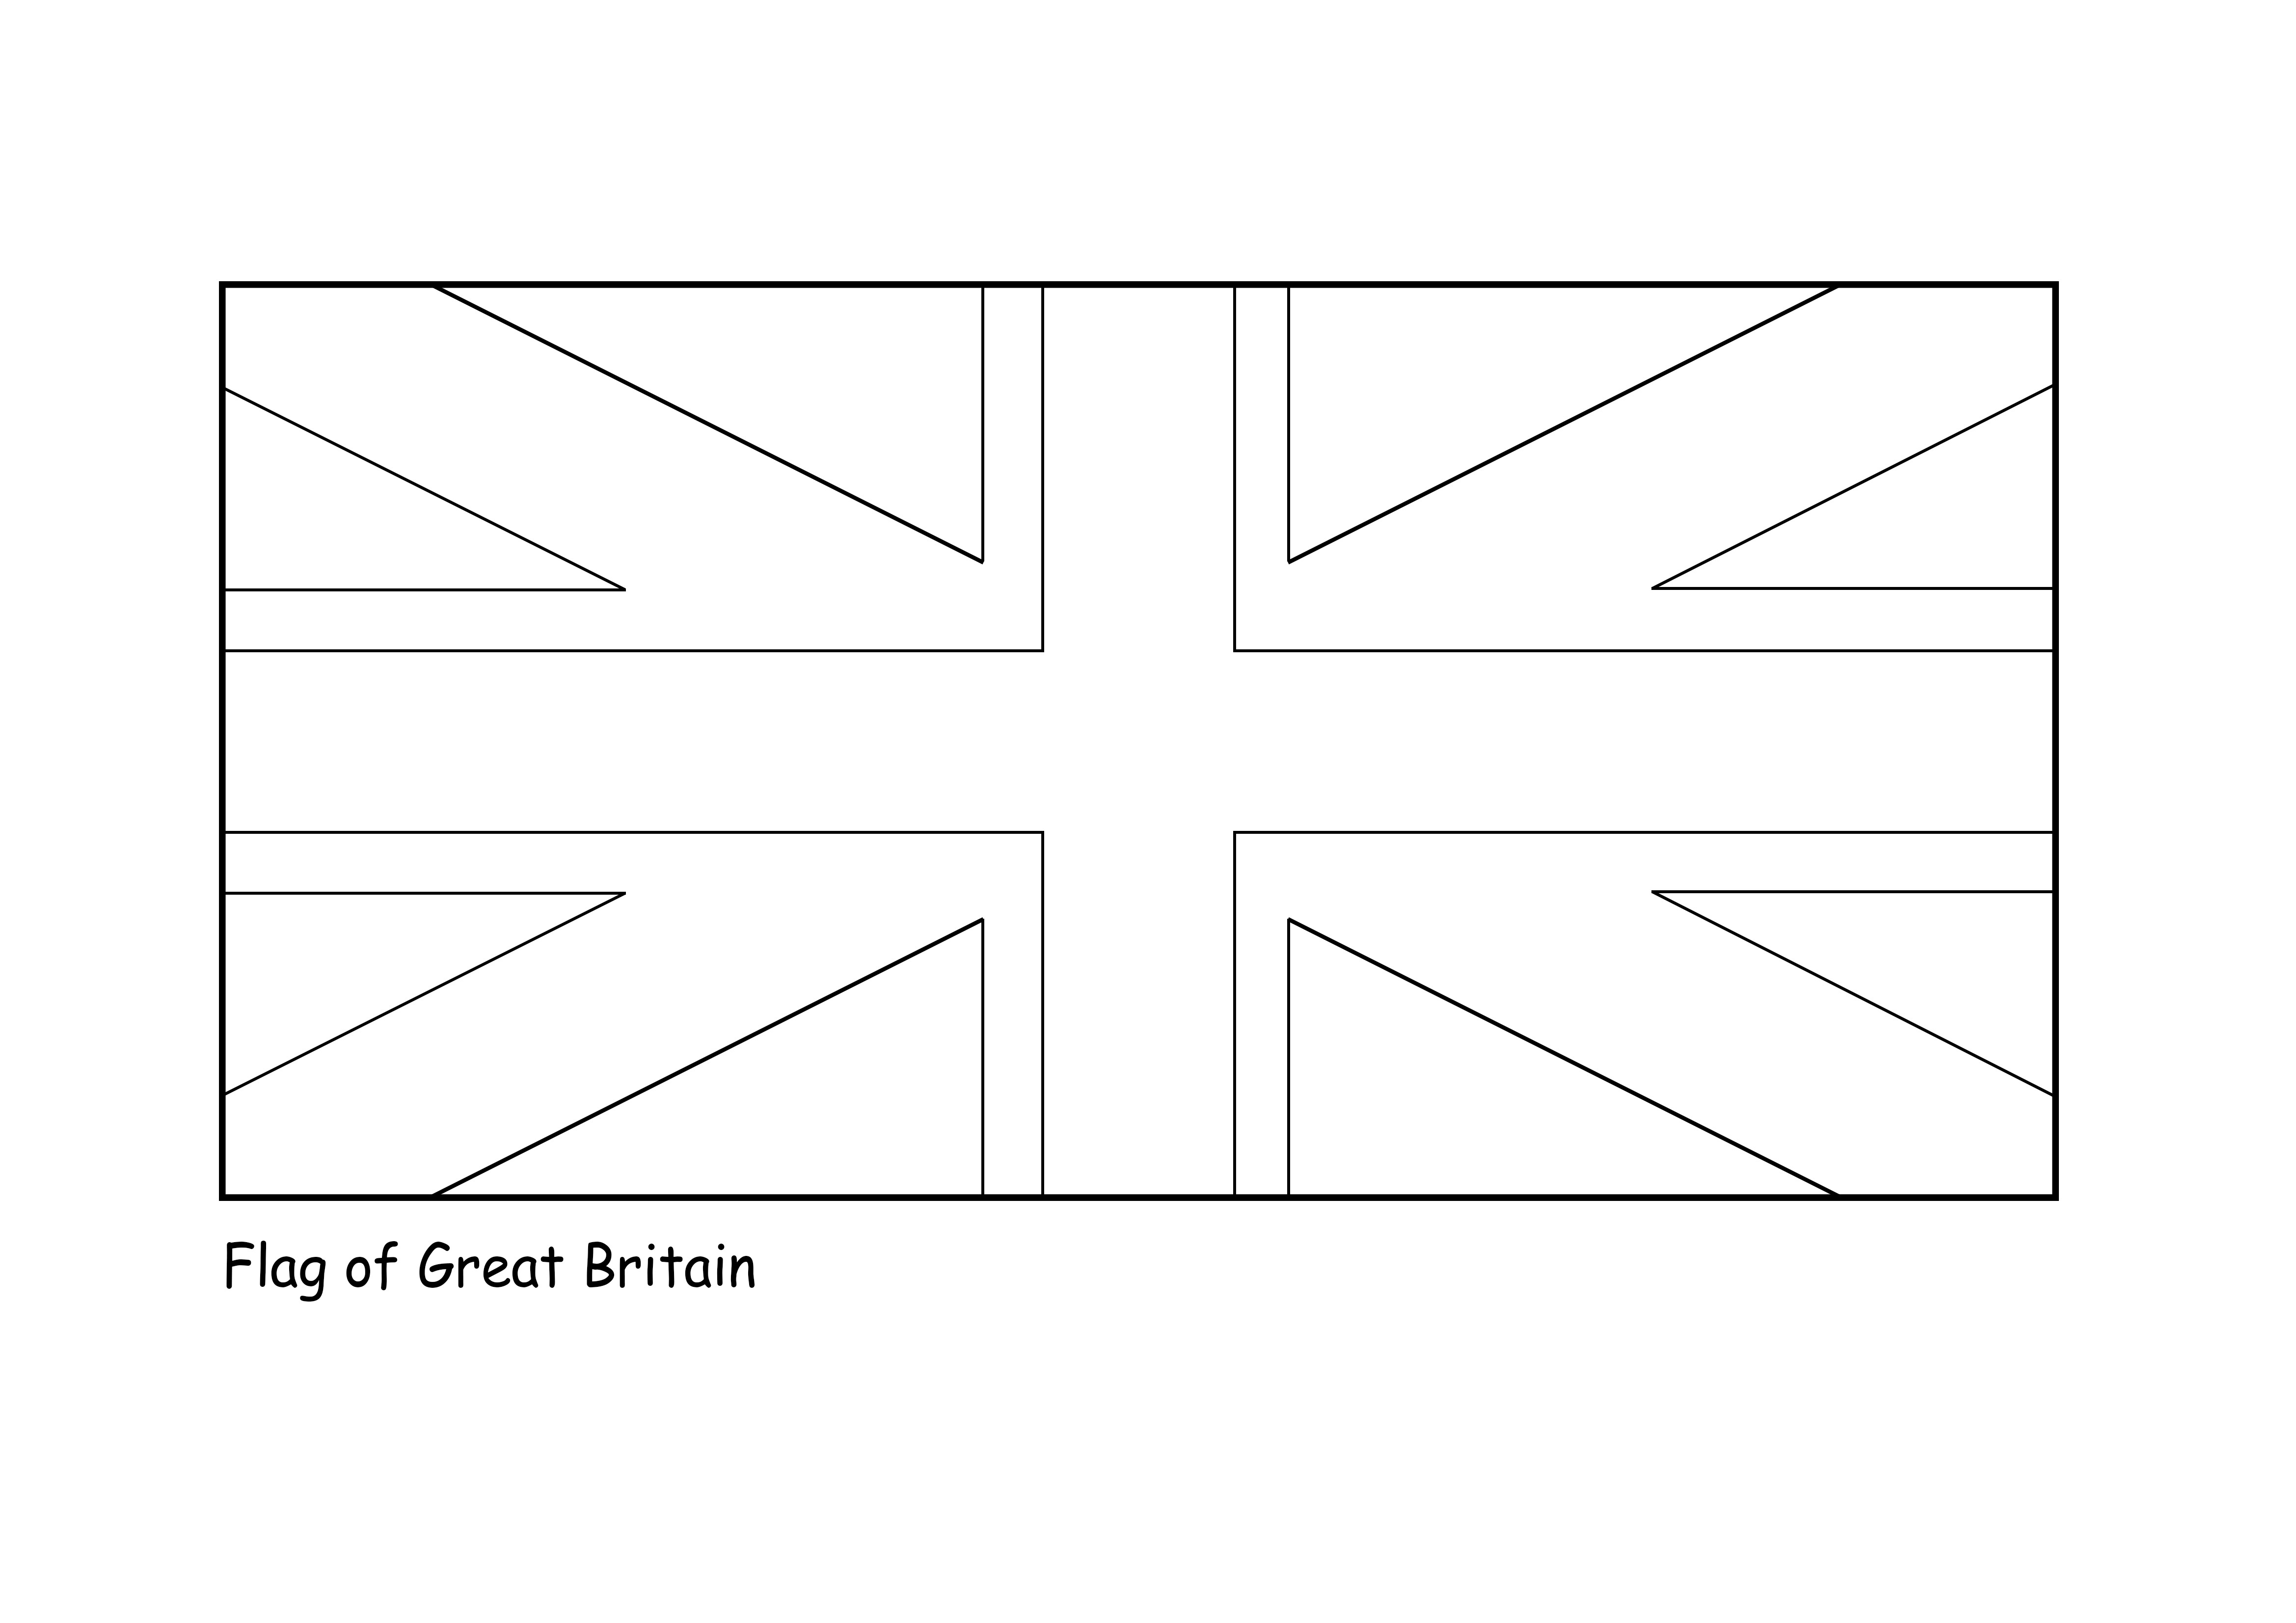 Bandiera della Gran Bretagna da stampare e colorare l'immagine gratuitamente